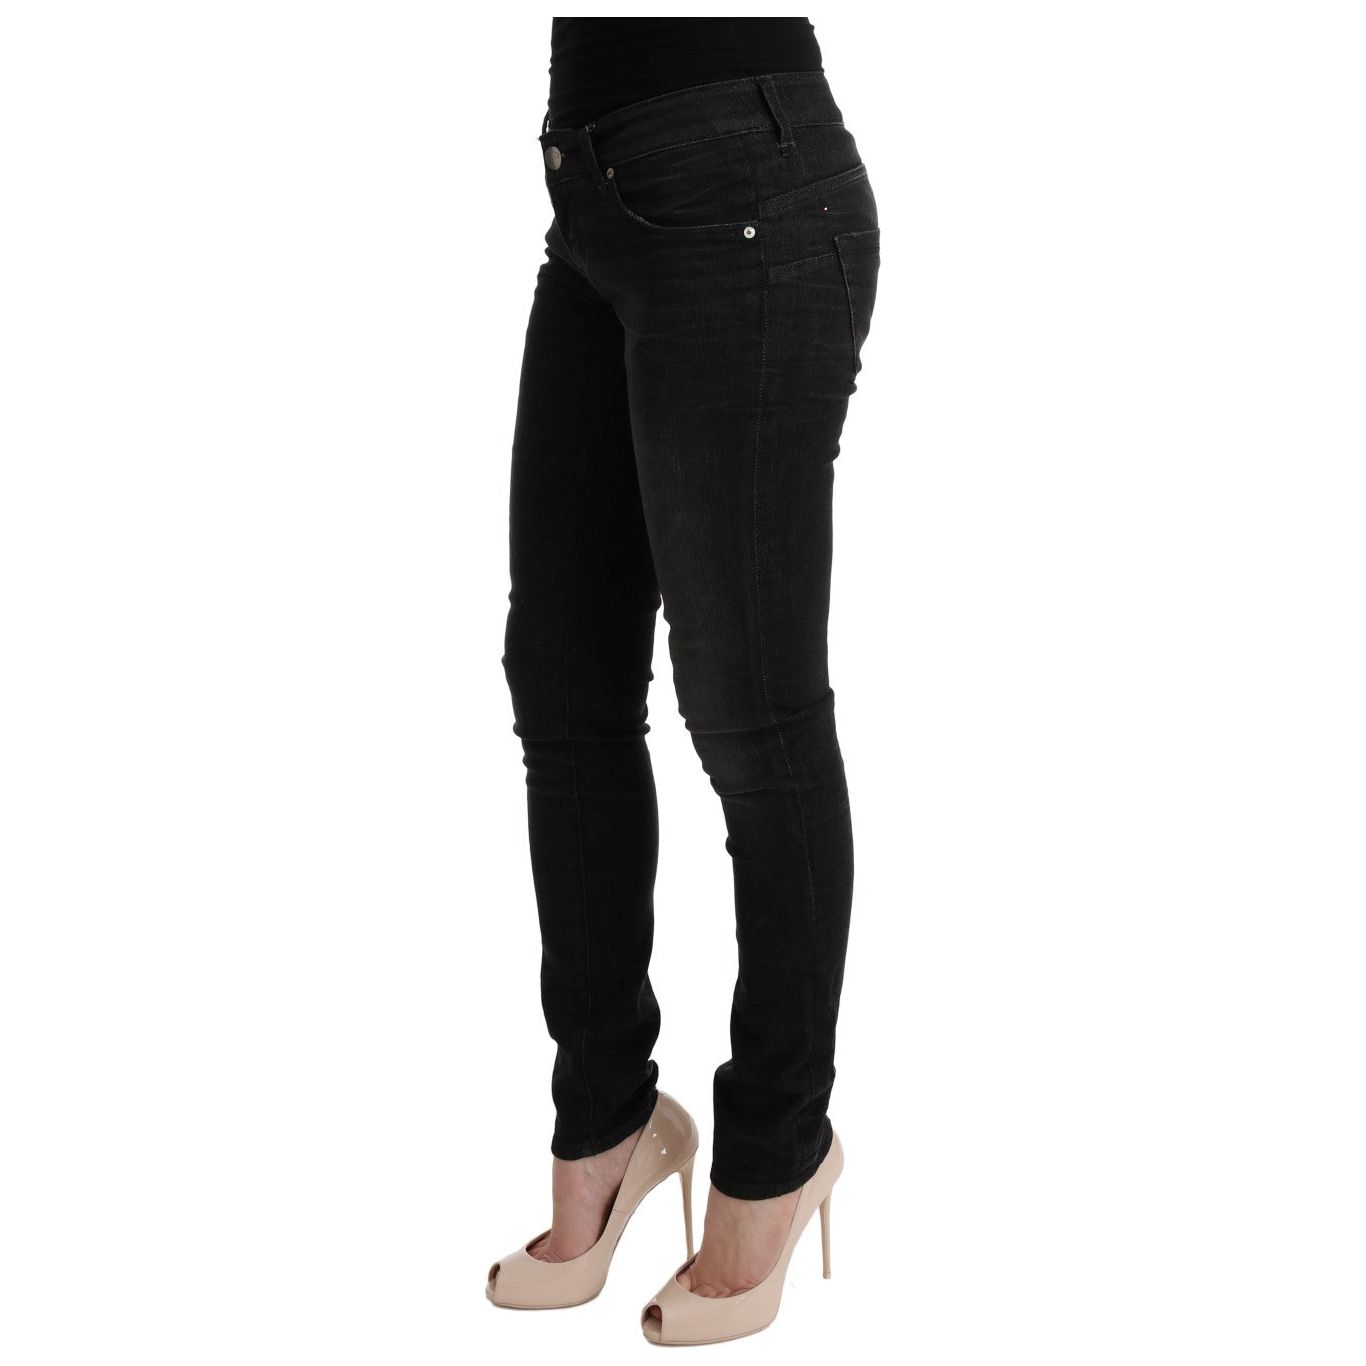 Acht Chic Slim Fit Black Cotton Jeans Jeans & Pants black-denim-cotton-bottoms-slim-fit-jeans 449507-black-denim-cotton-bottoms-slim-fit-jeans-1.jpg